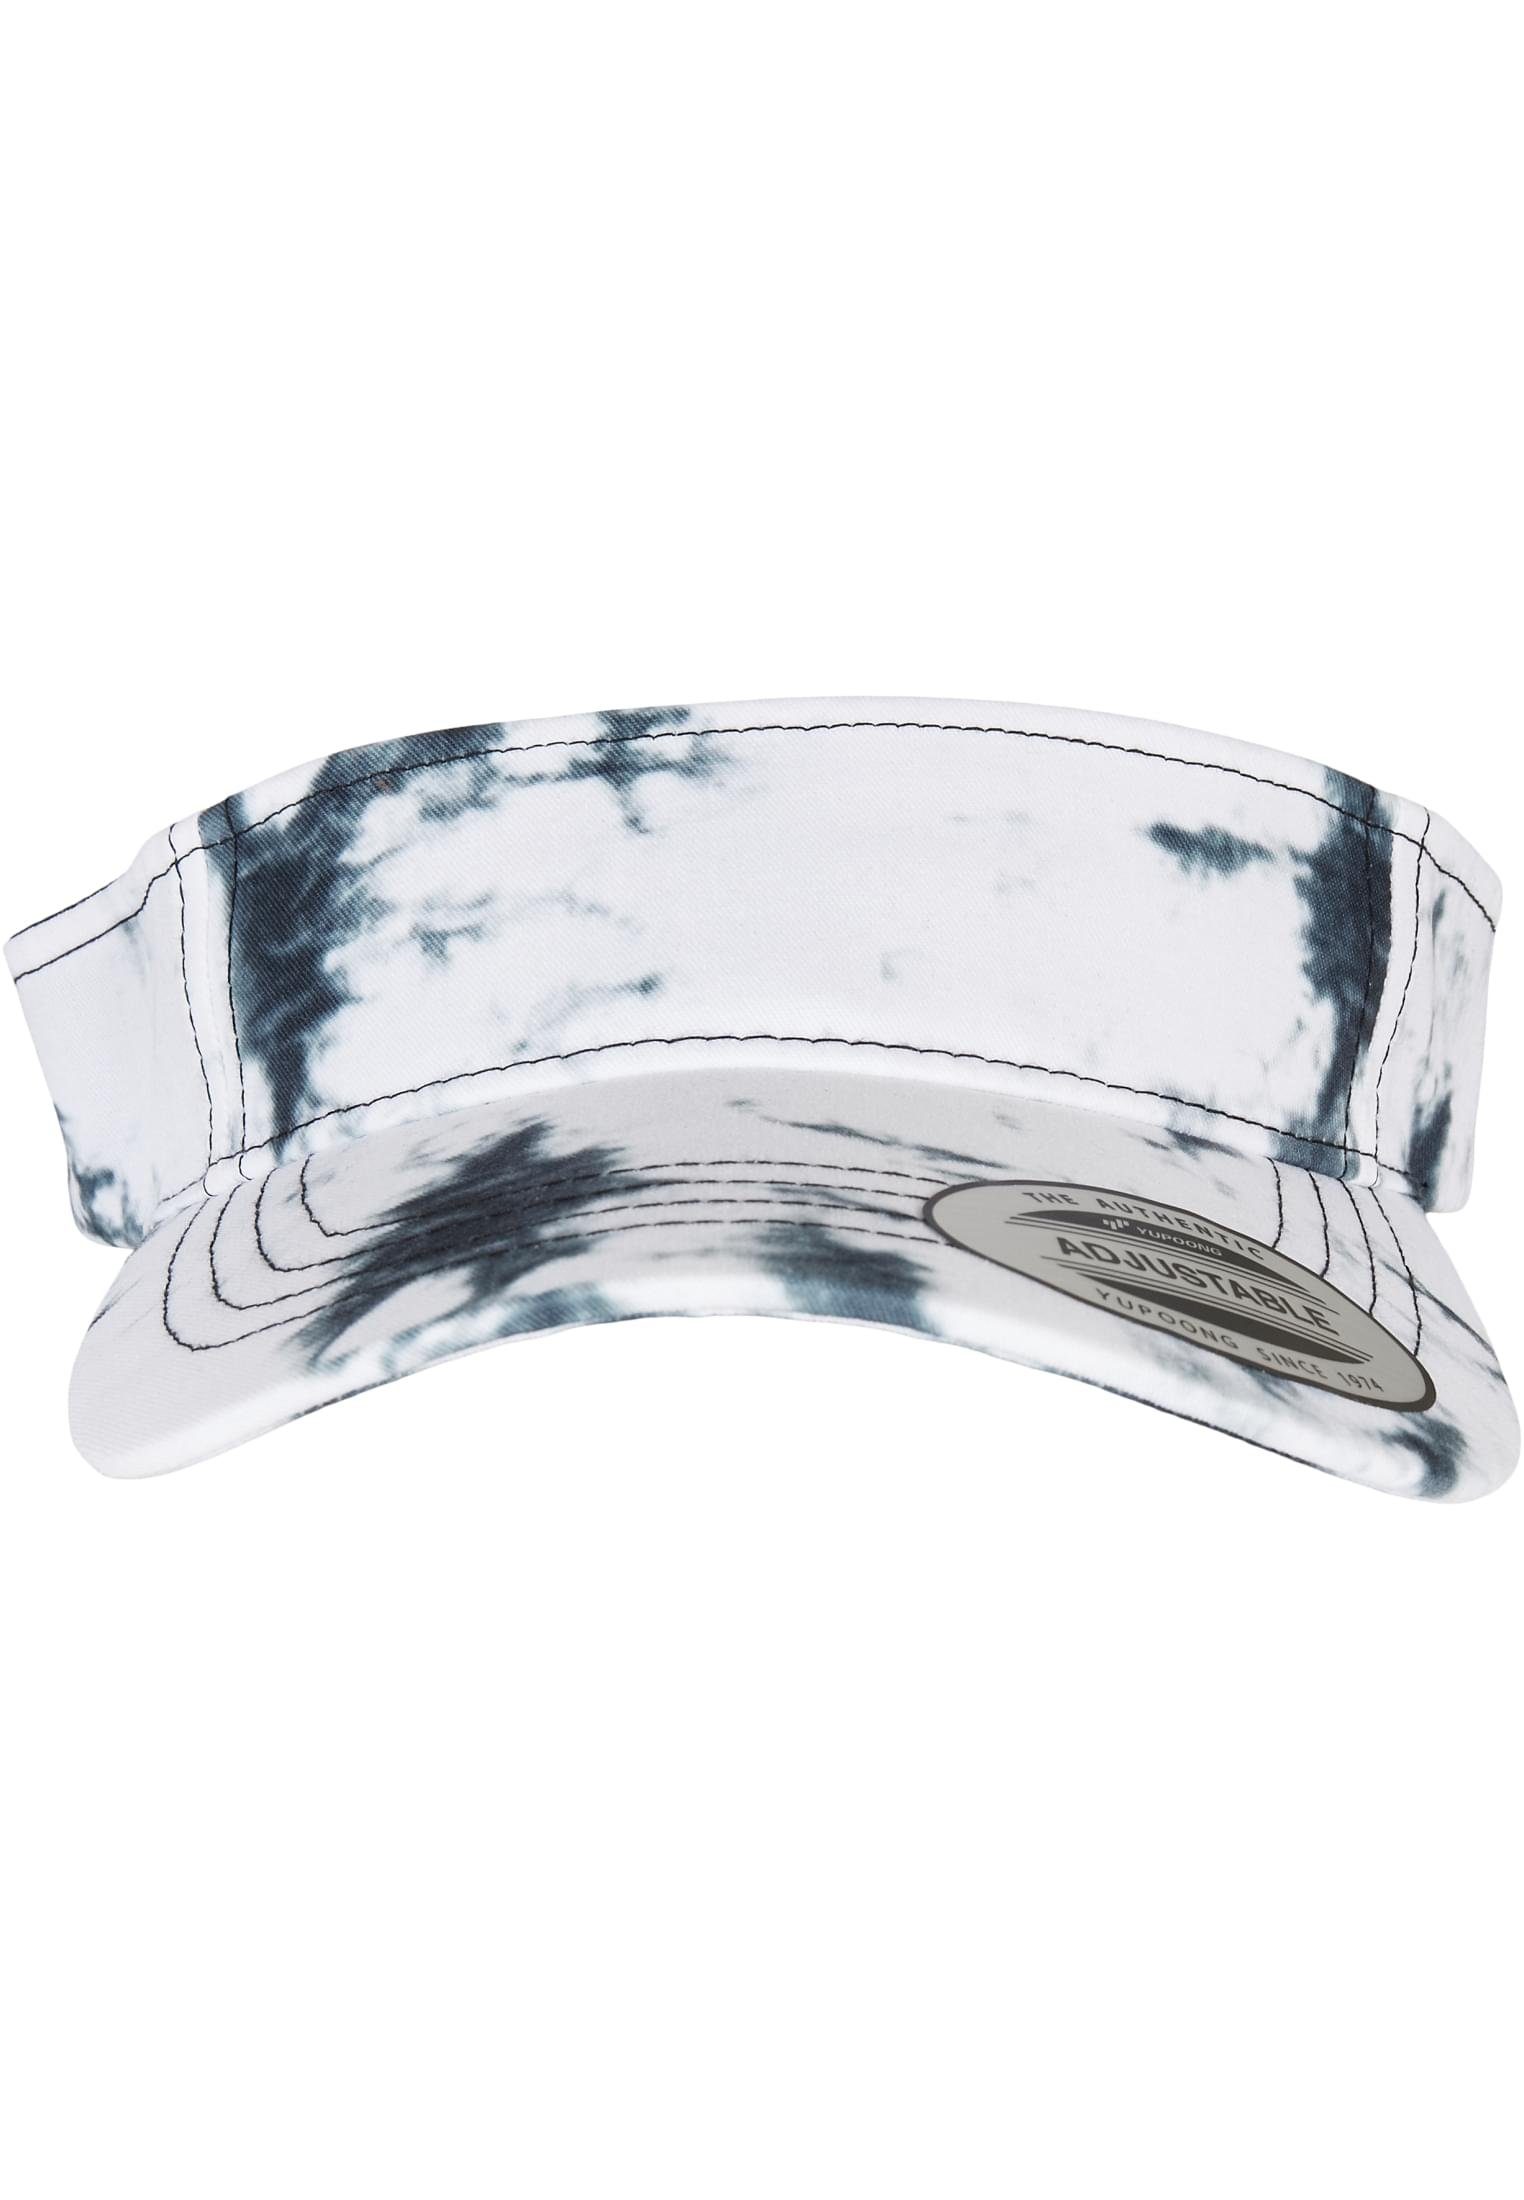 Flexfit Flex Cap Accessoires Batik Dye Curved Visor Cap black/white